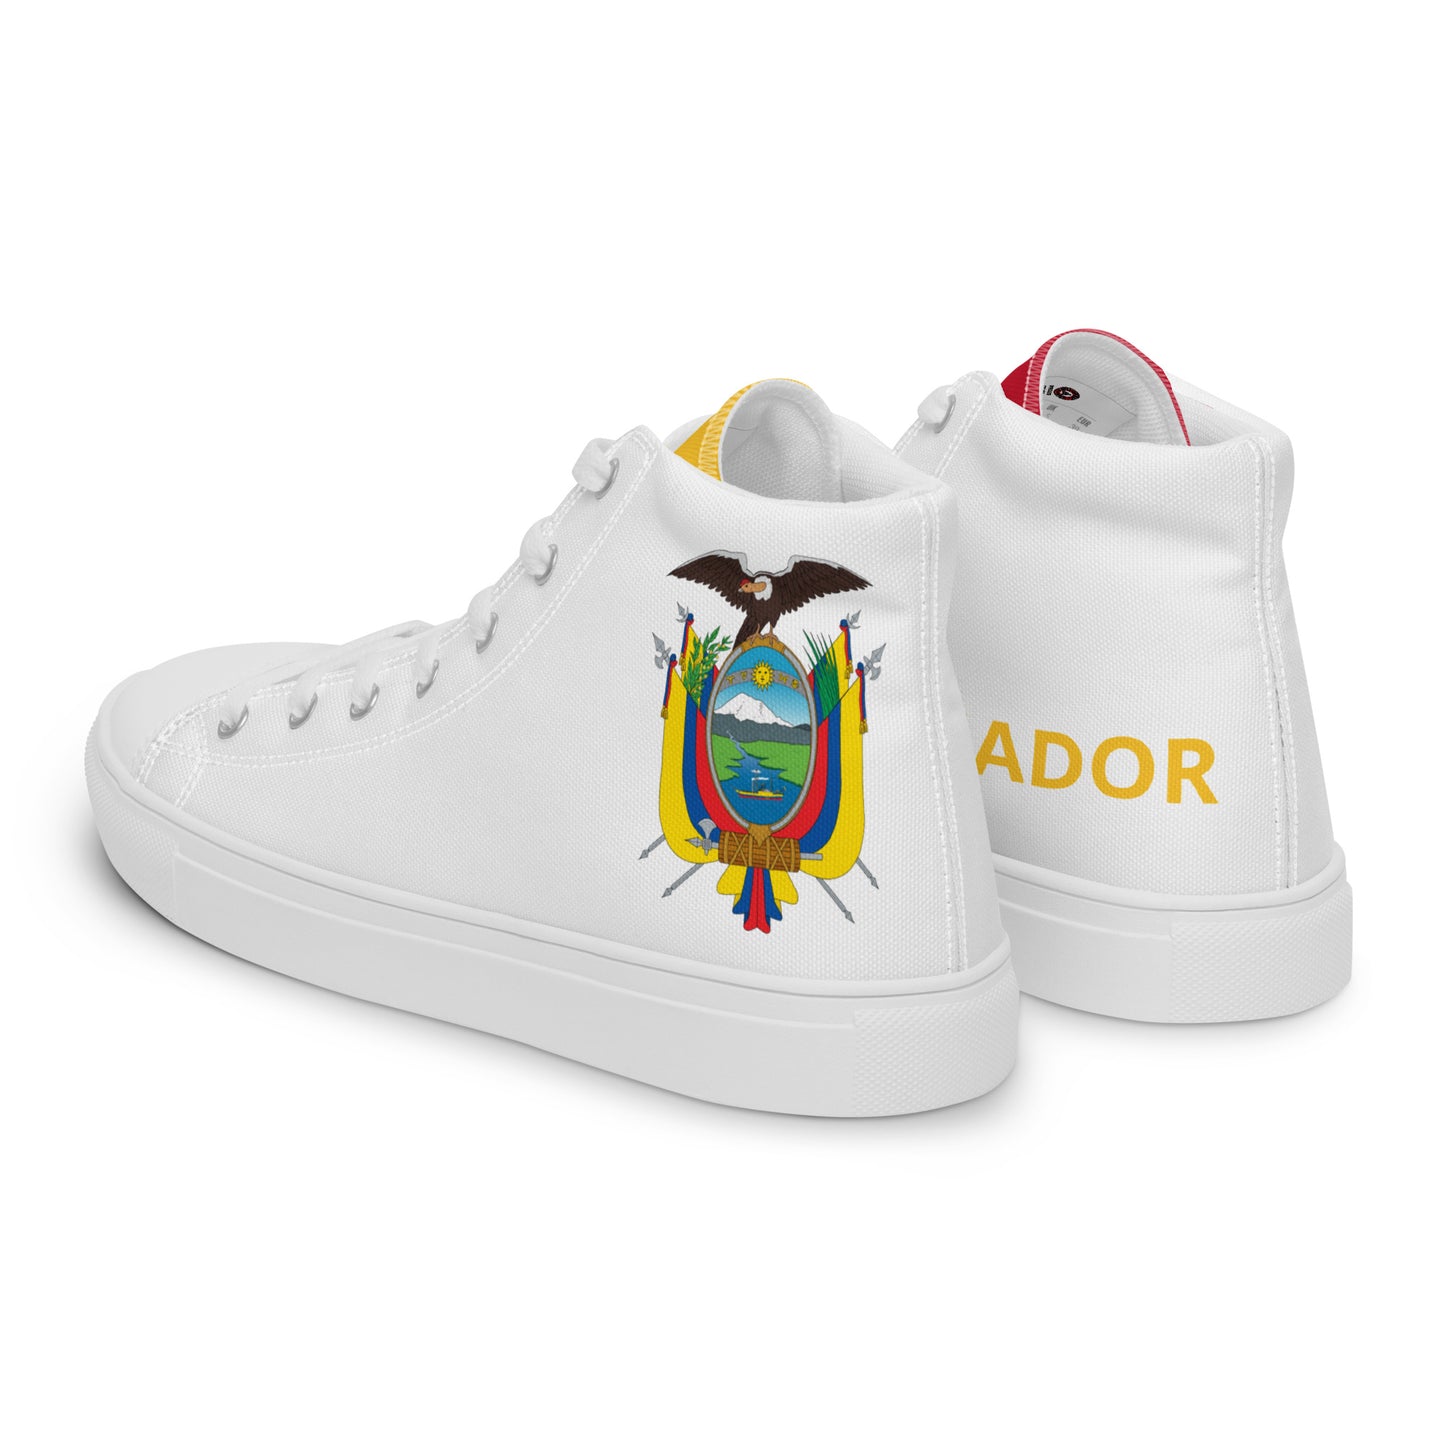 Ecuador - Women - White - High top shoes